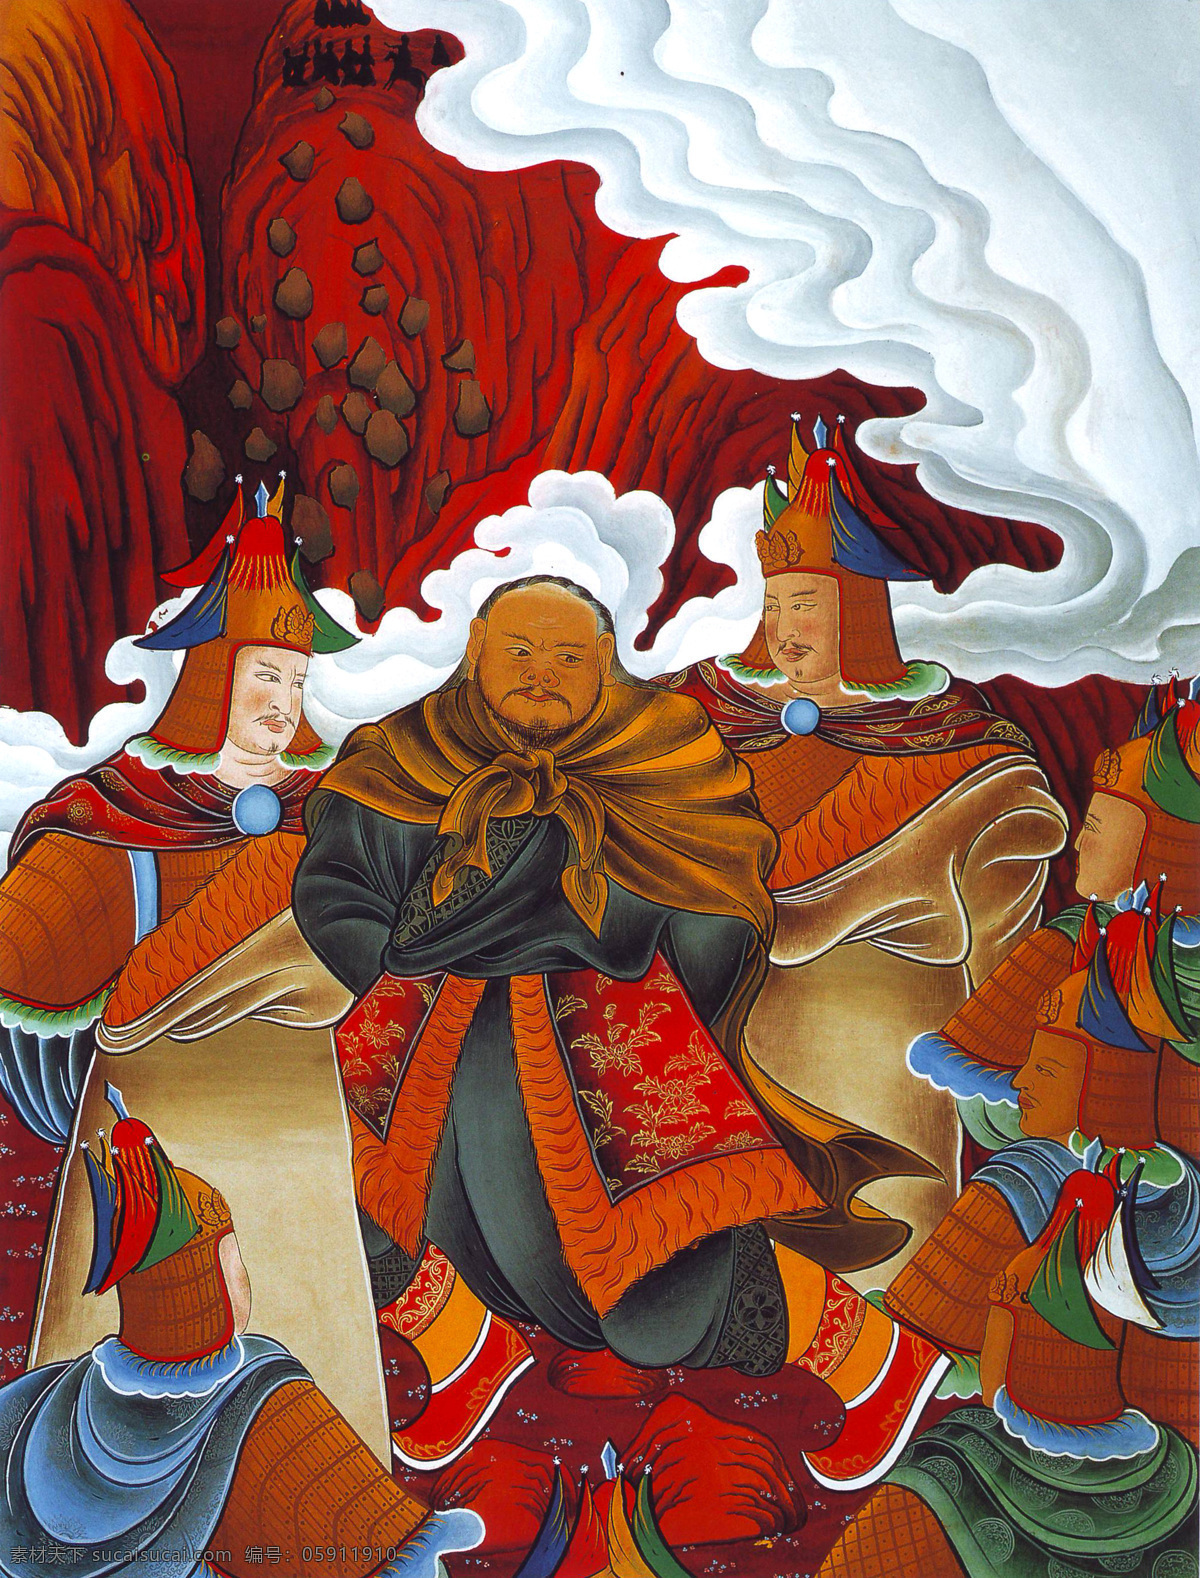 缉拿 恶人 天兵天将 神仙 唐卡 彩绘 佛教 宗教 信仰 卷轴画 书画文字 文化艺术